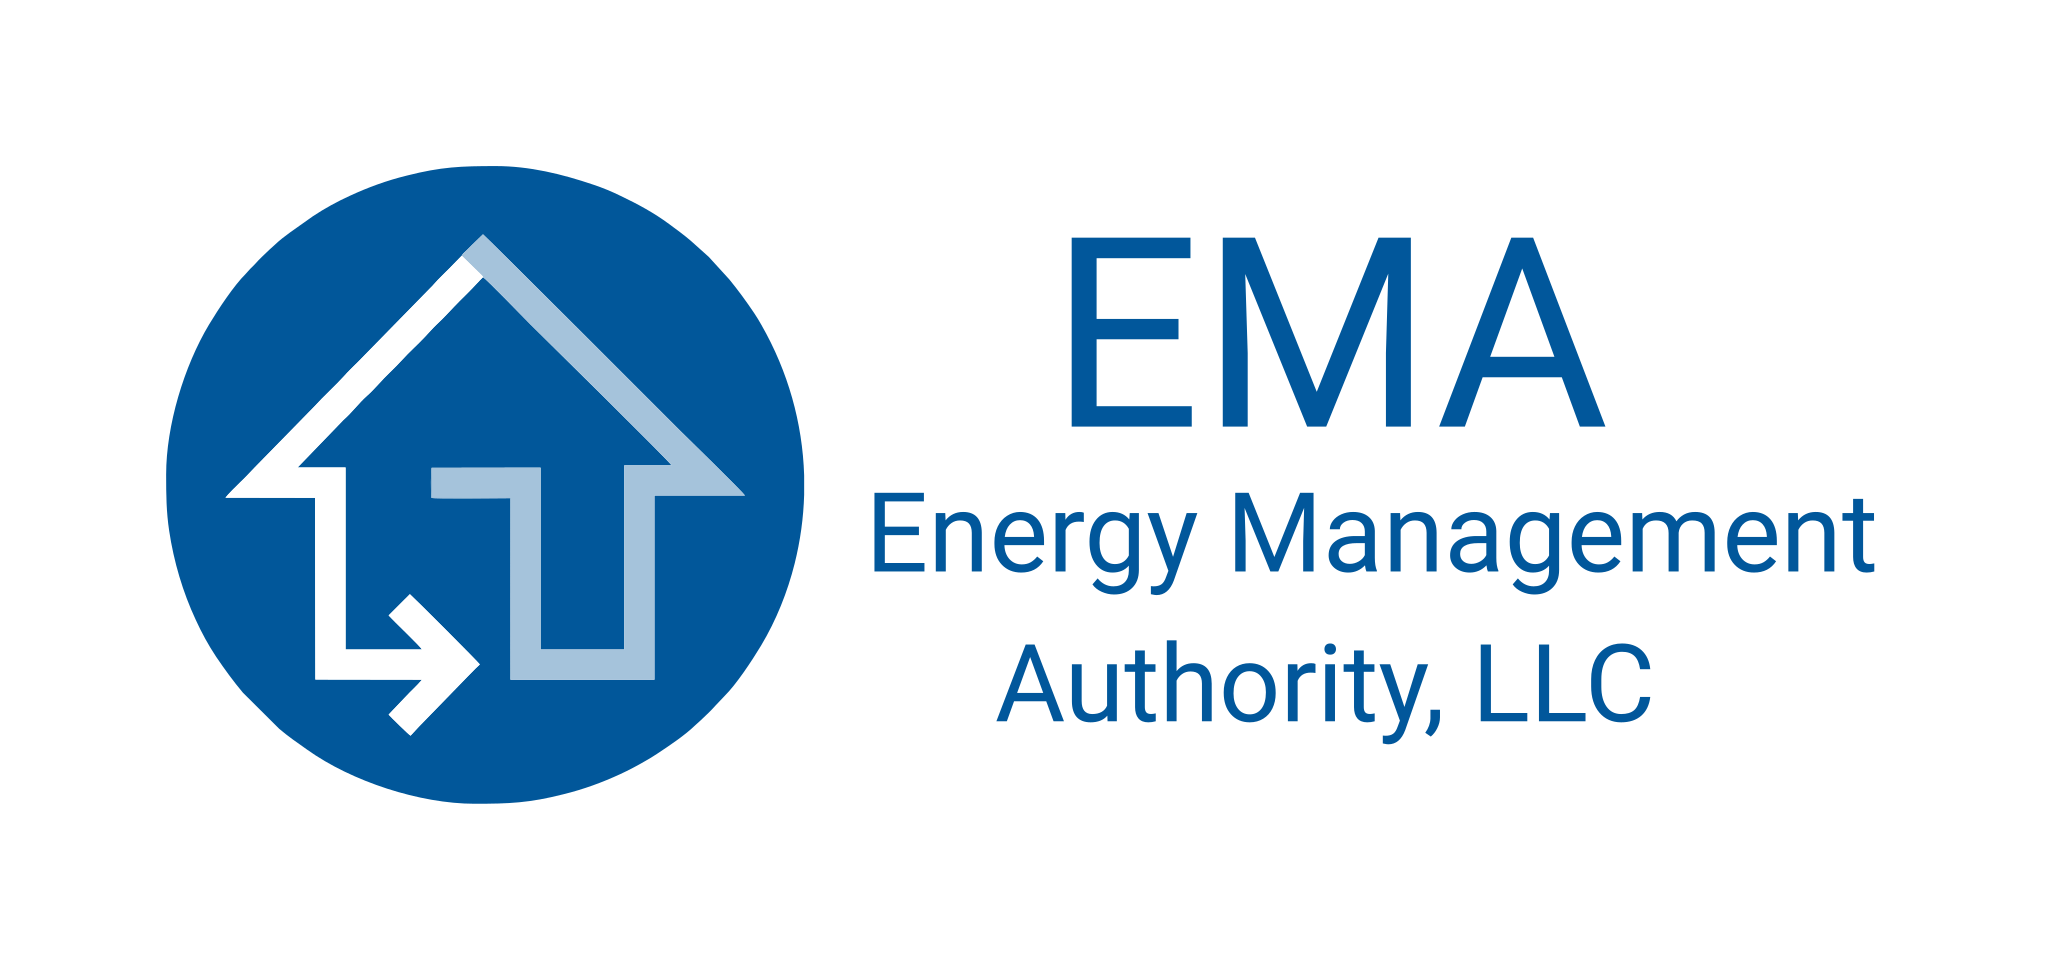 Energy Management Authority, LLC